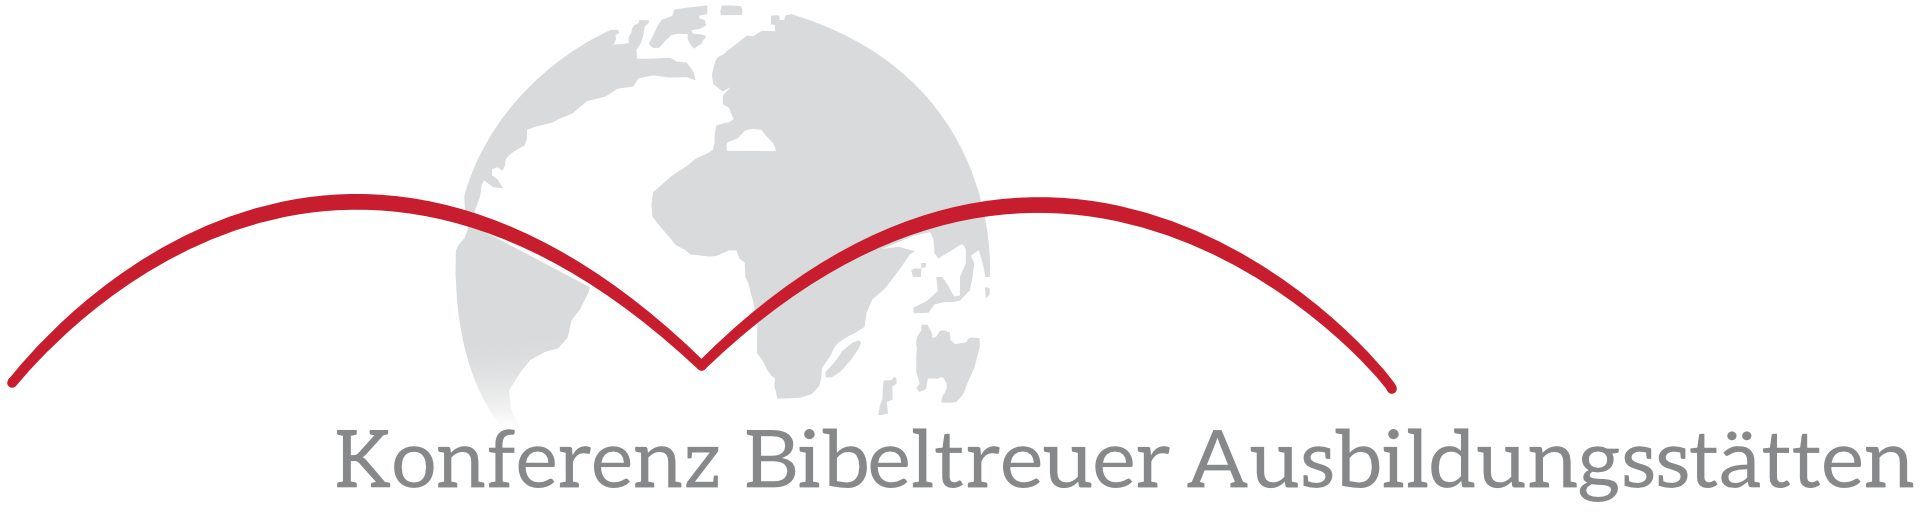 Konferenz Bibeltreuer Ausbildungsstätten